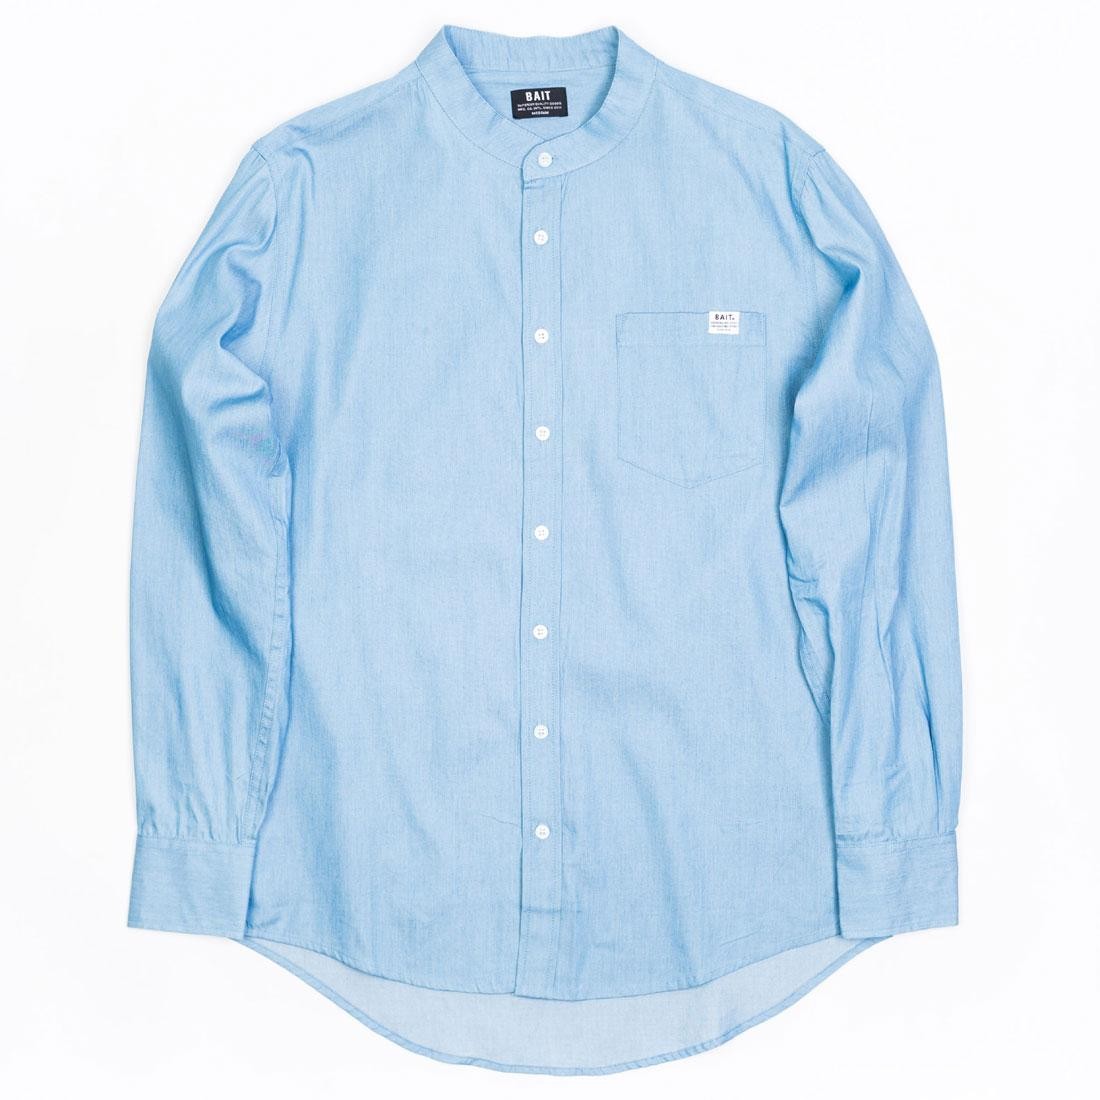 blue button up shirt mens